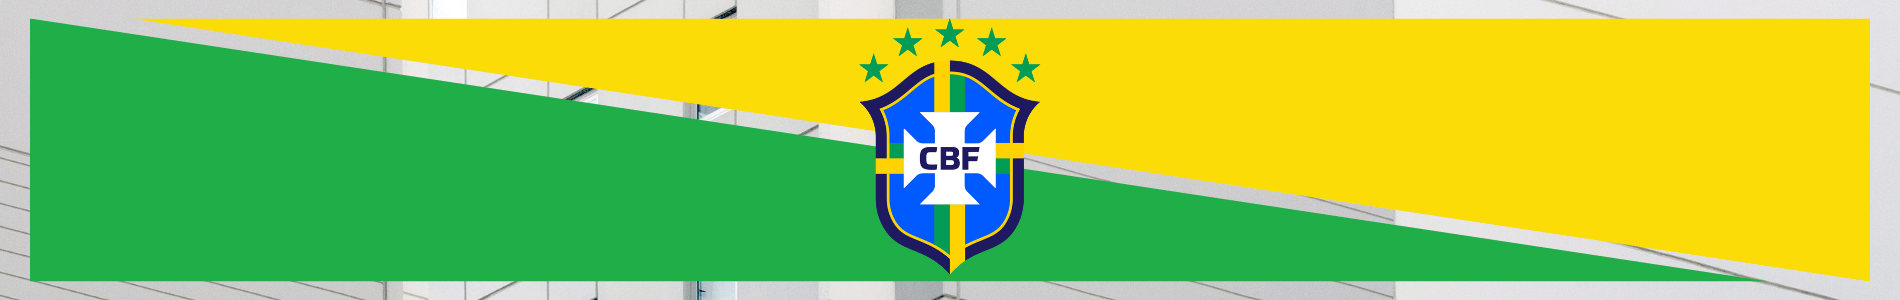 2023-2024 Brésil Troisième Concept Football Maillot (Neymar Jr 10)